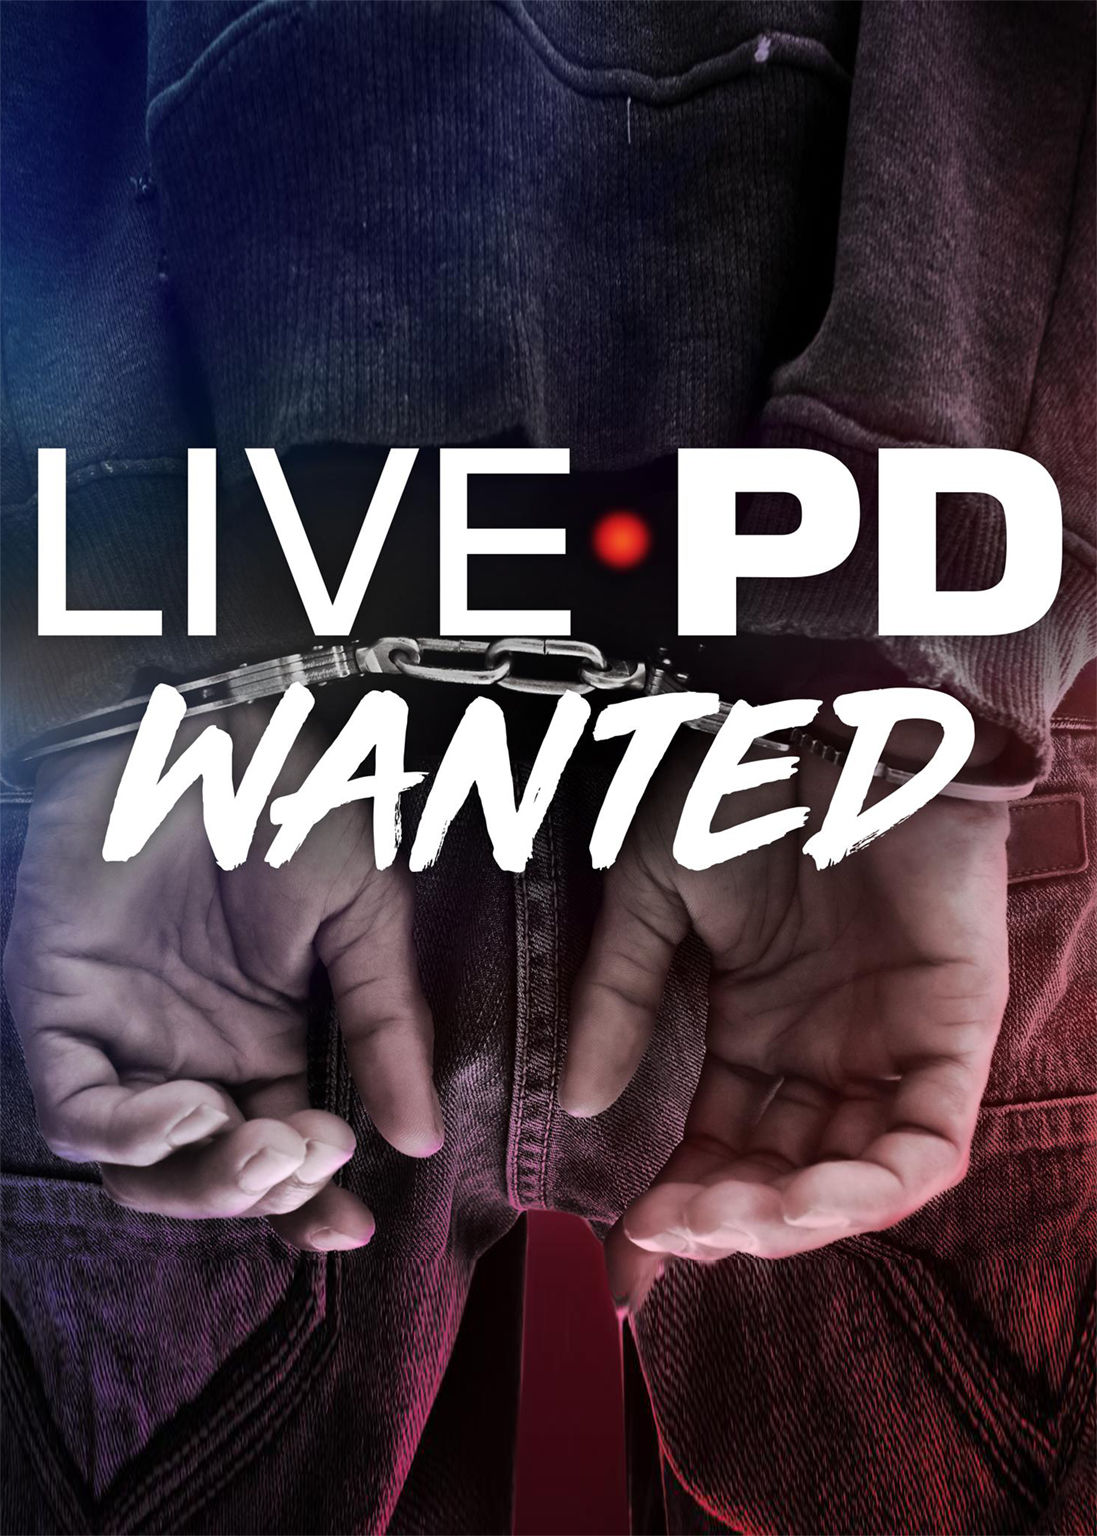 Live PD: Wanted ne zaman